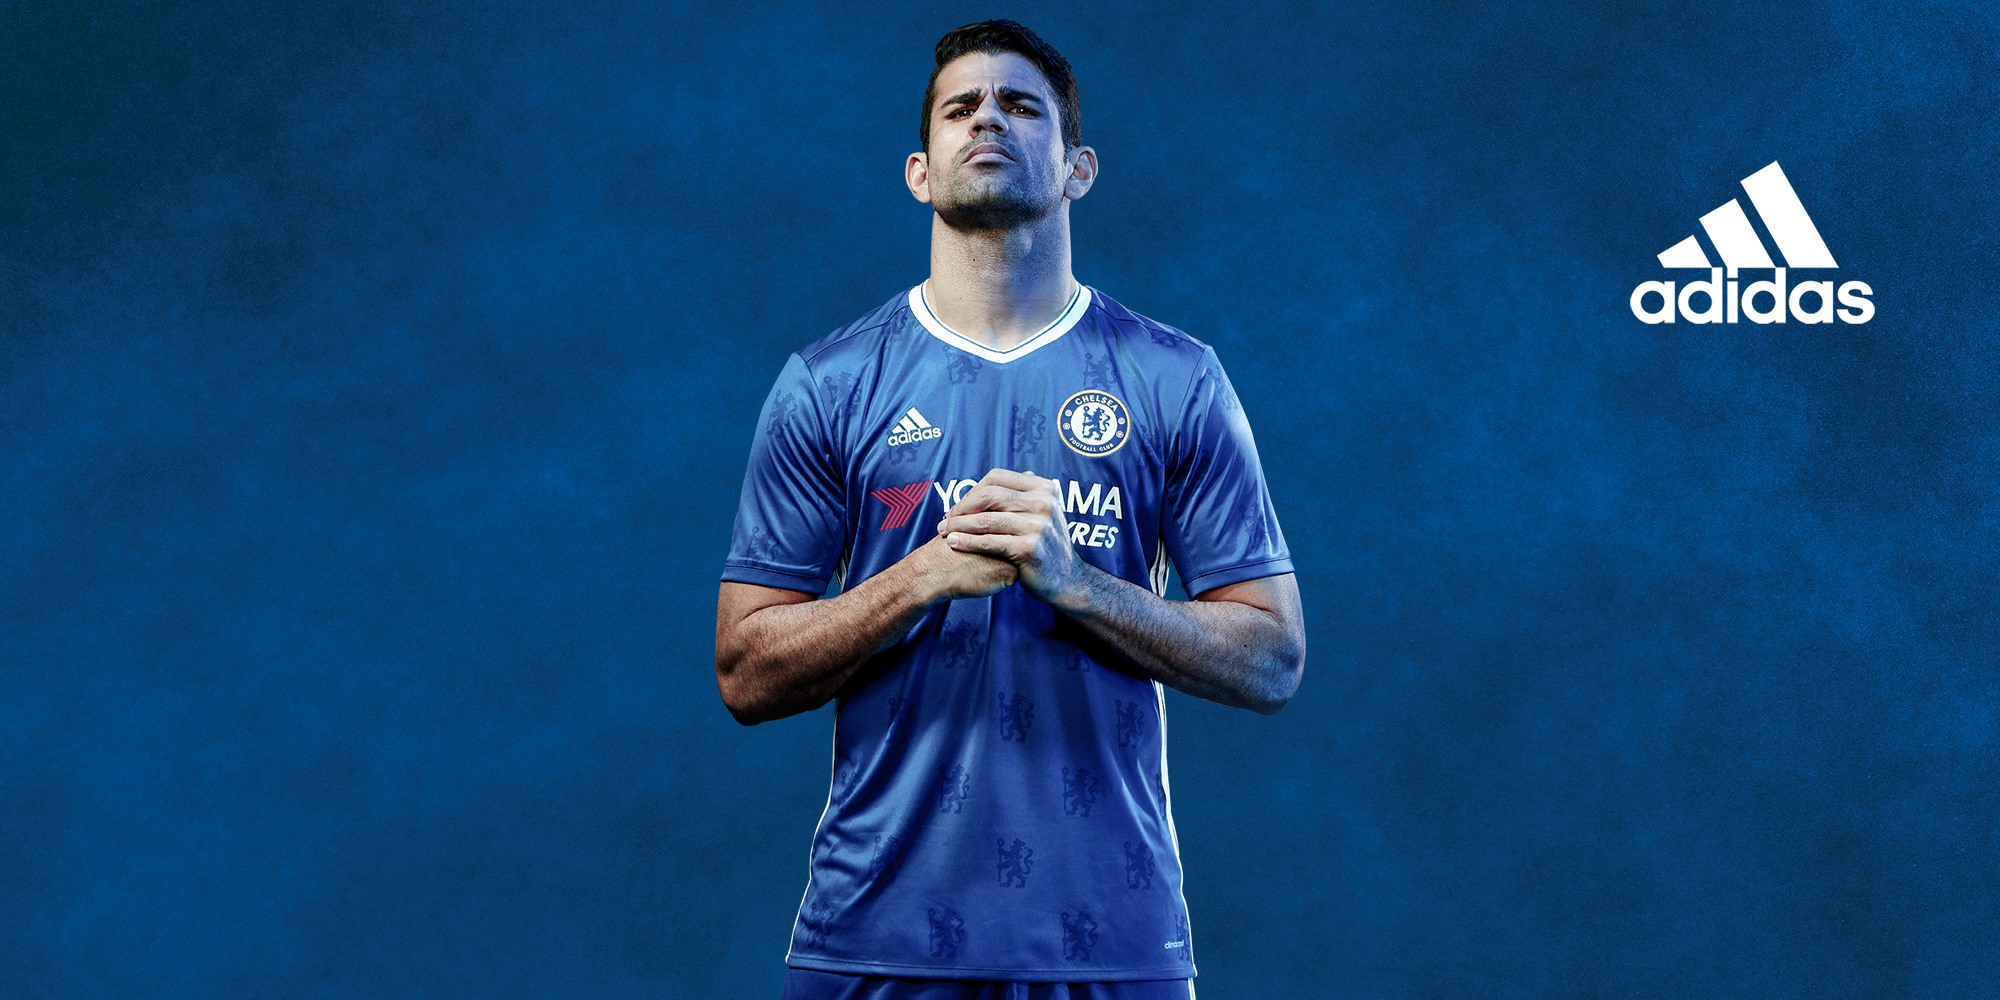 El Chelsea presenta su camiseta para la próxima temporada